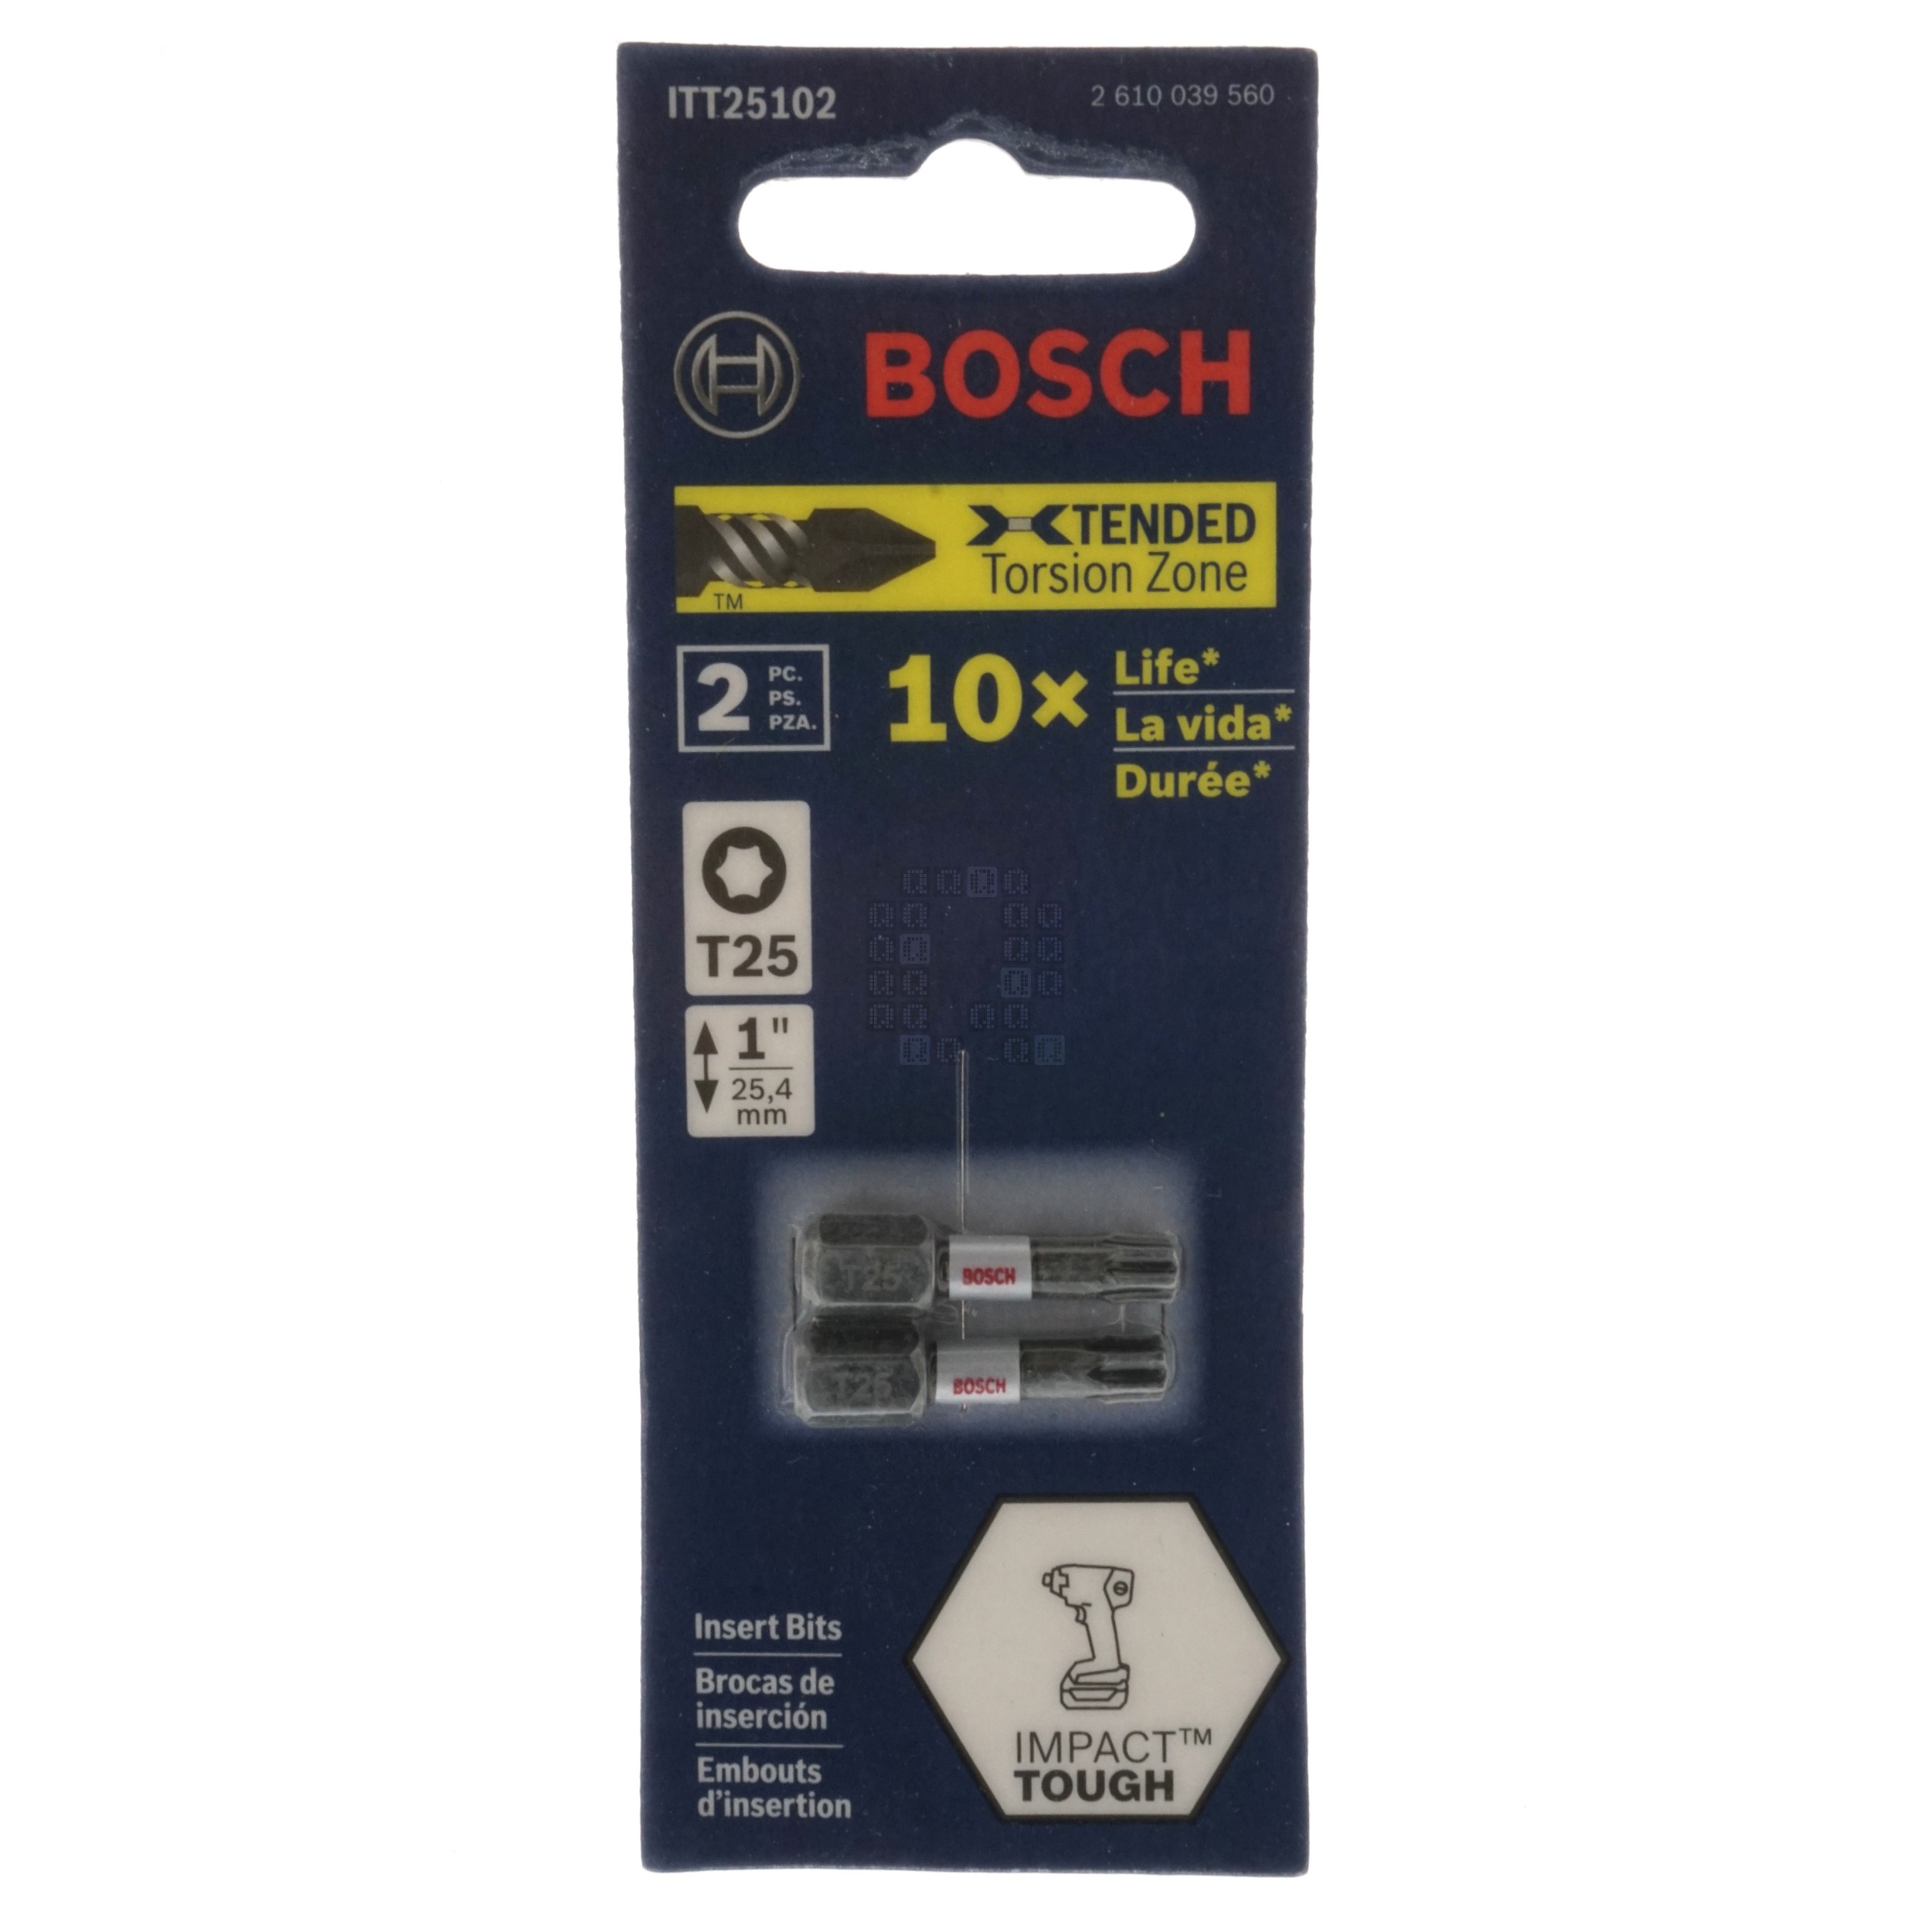 Bosch ITT25102 2610039560 Impact Tough T25 TORX Inset Bits, 1" Length, 2-Pack